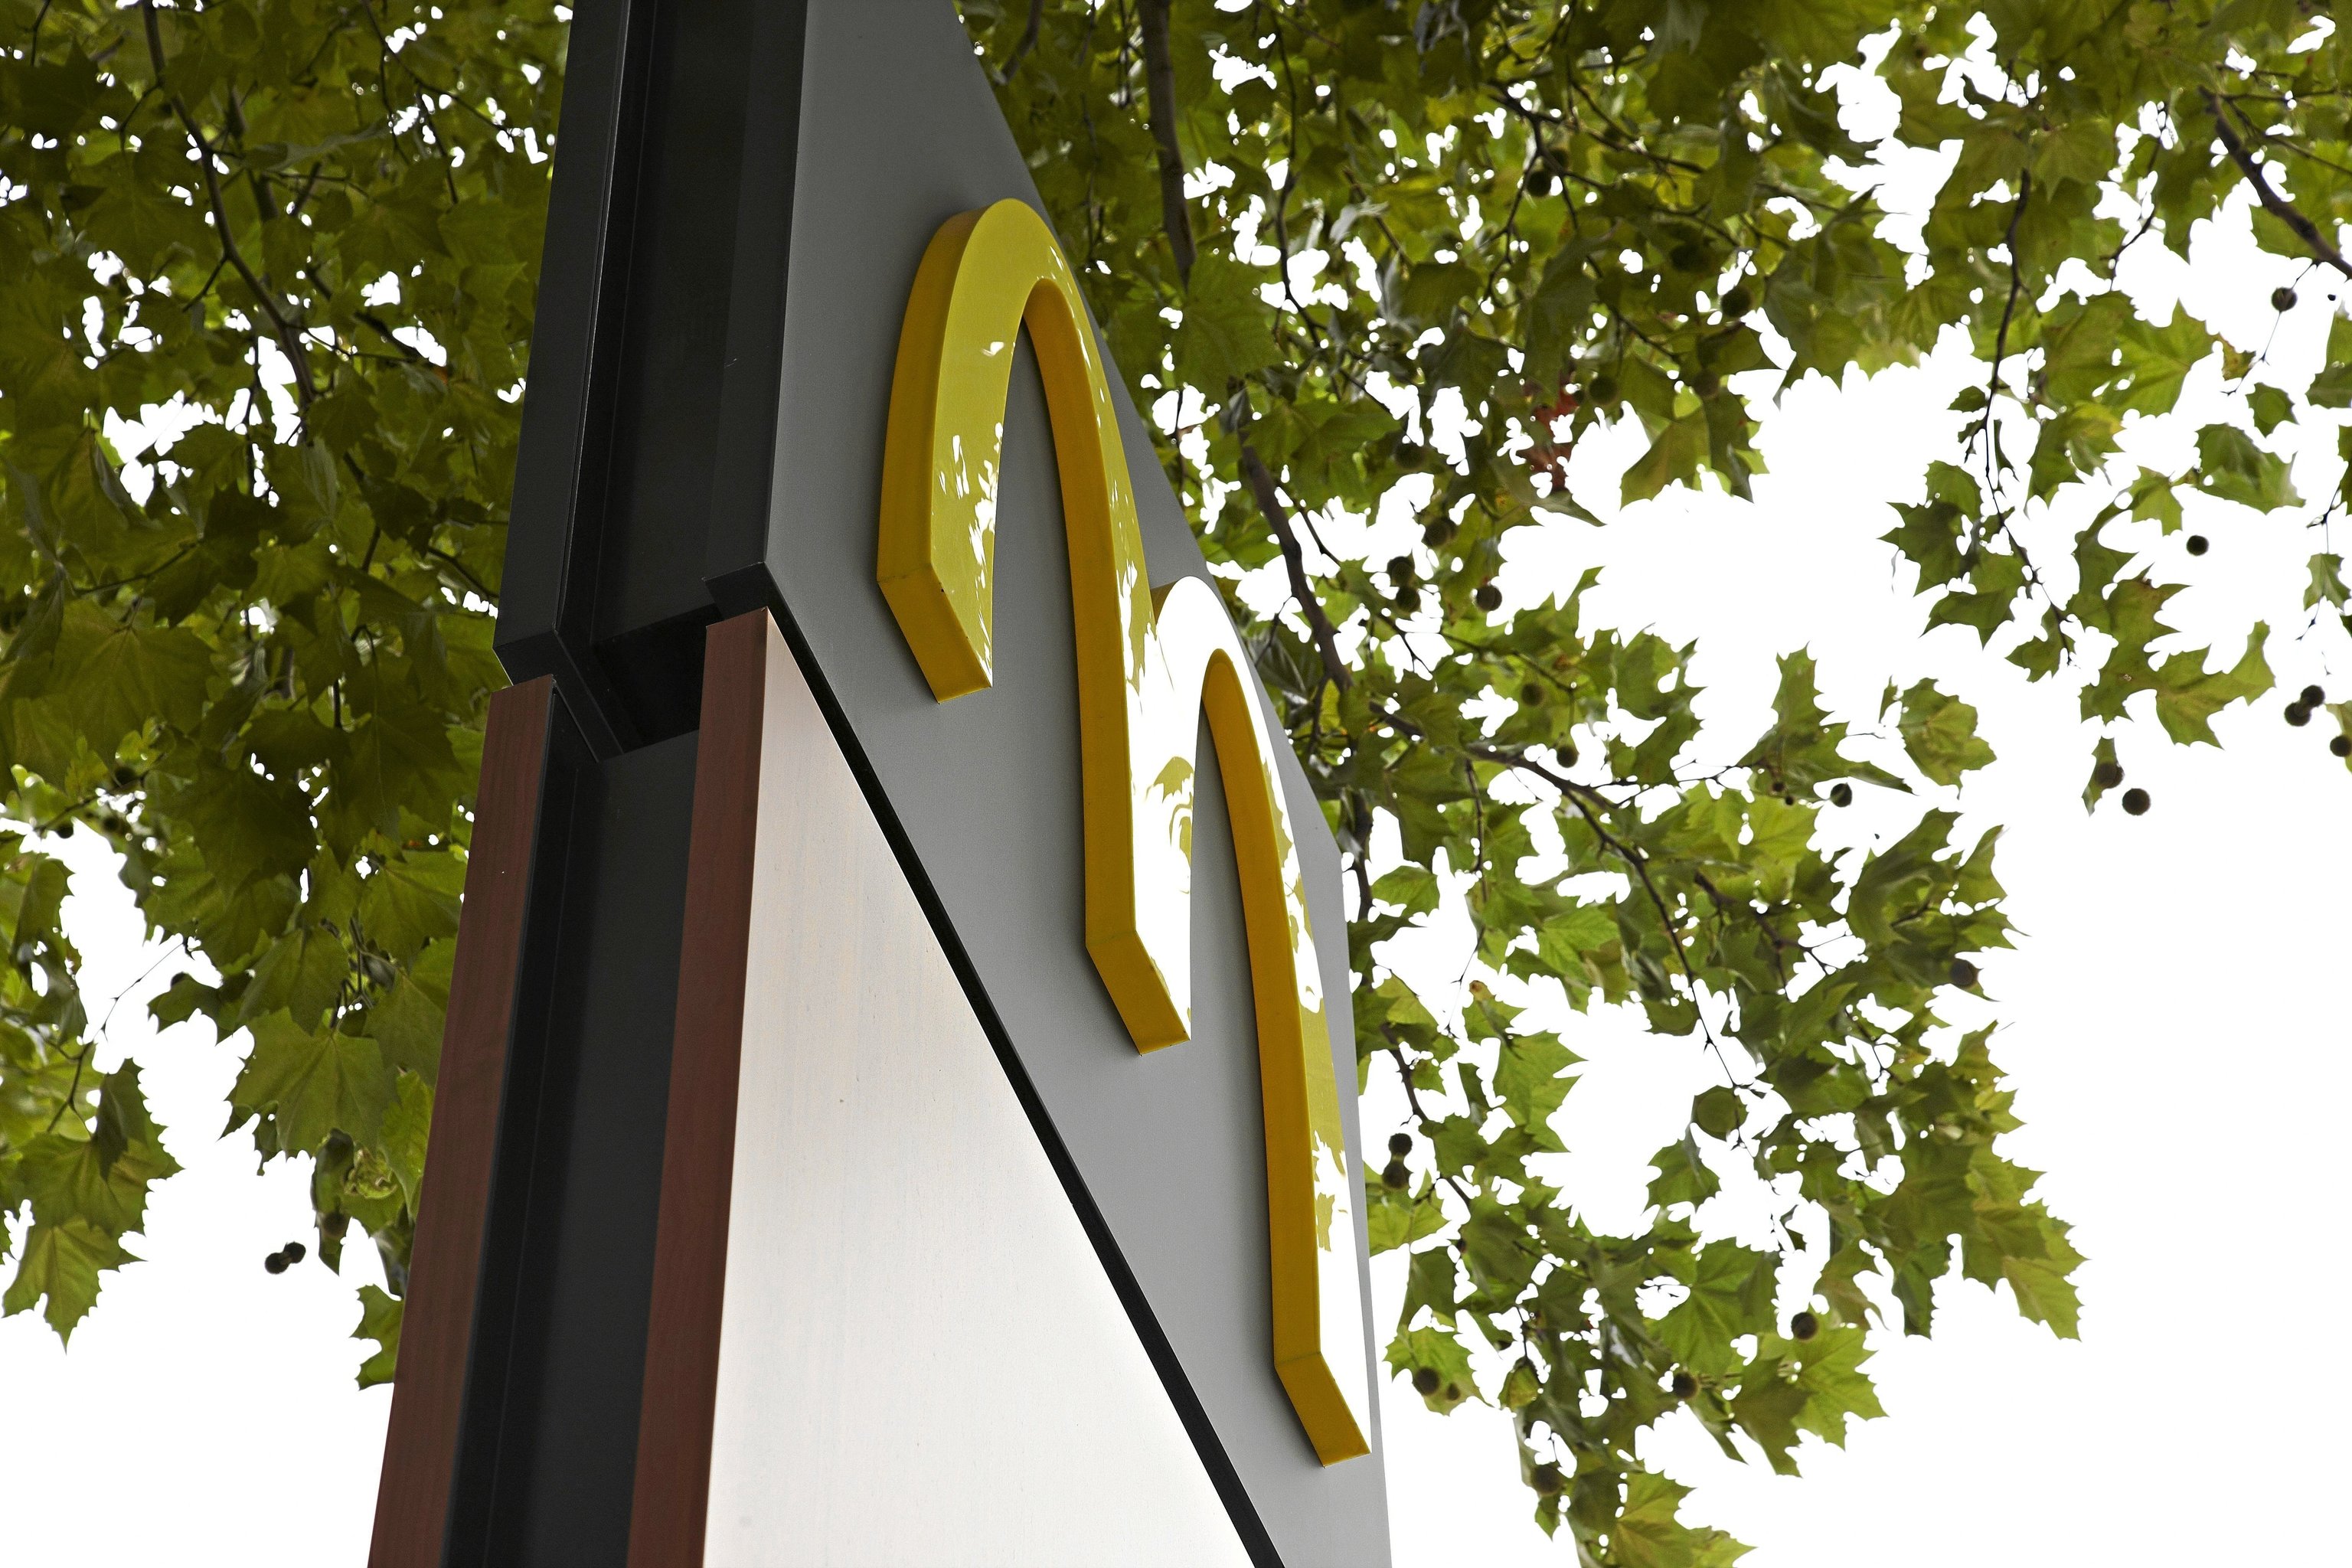 Los trabajadores de Burger King, KFC o McDonald’s tendrán un sueldo mínimo de 16.000 euros